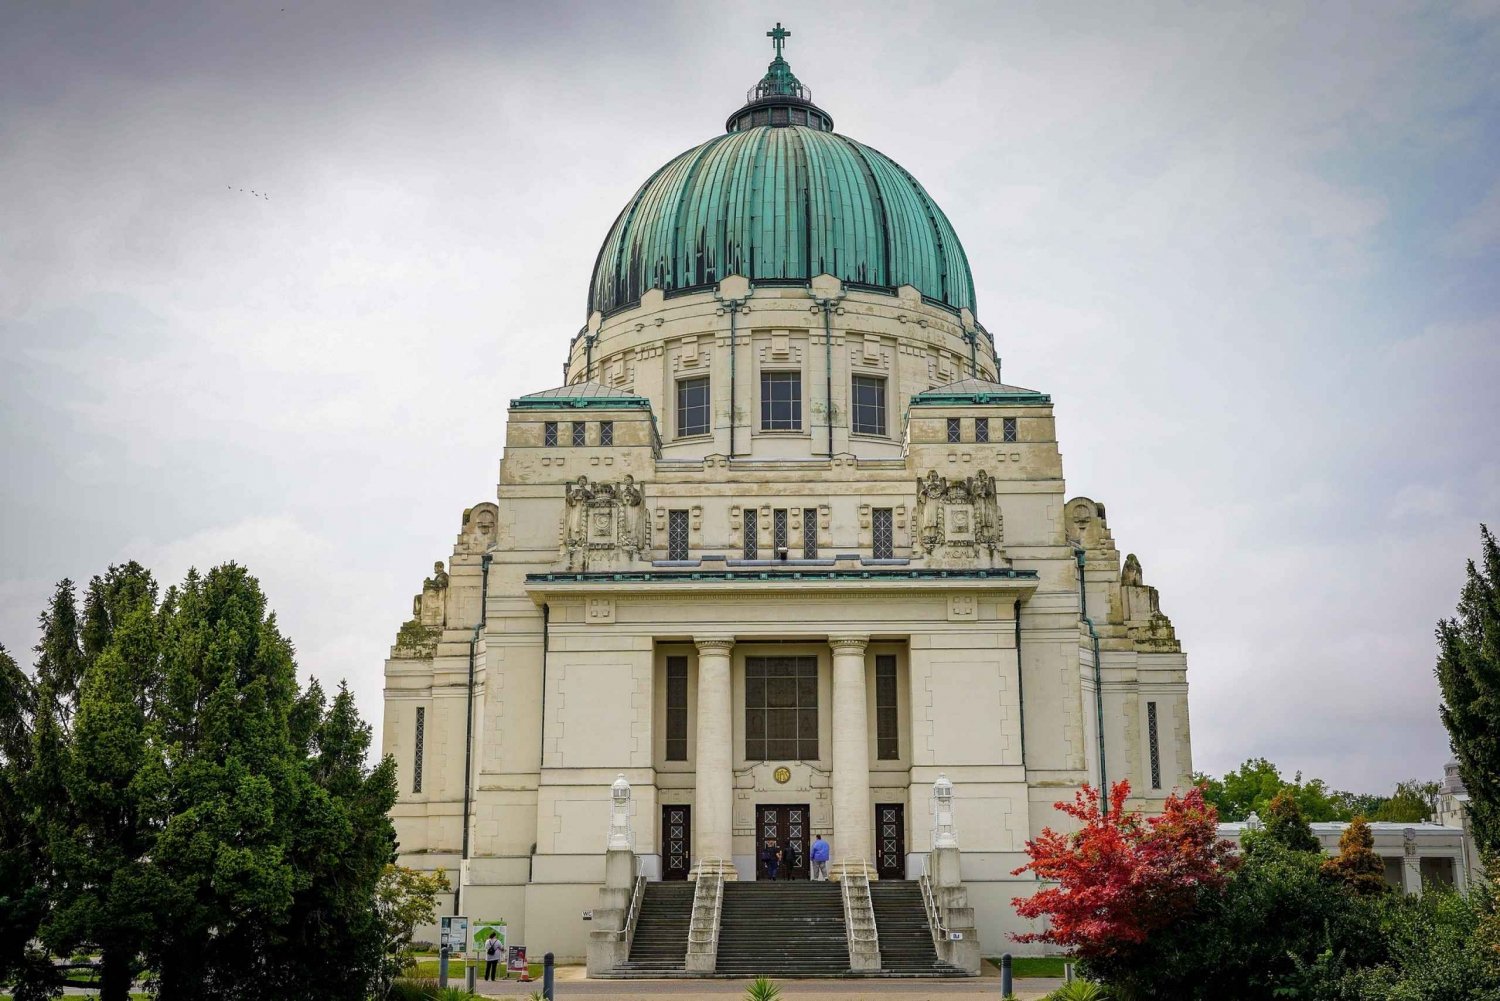 Vienne : Visite en groupe du cimetière central de Vienne